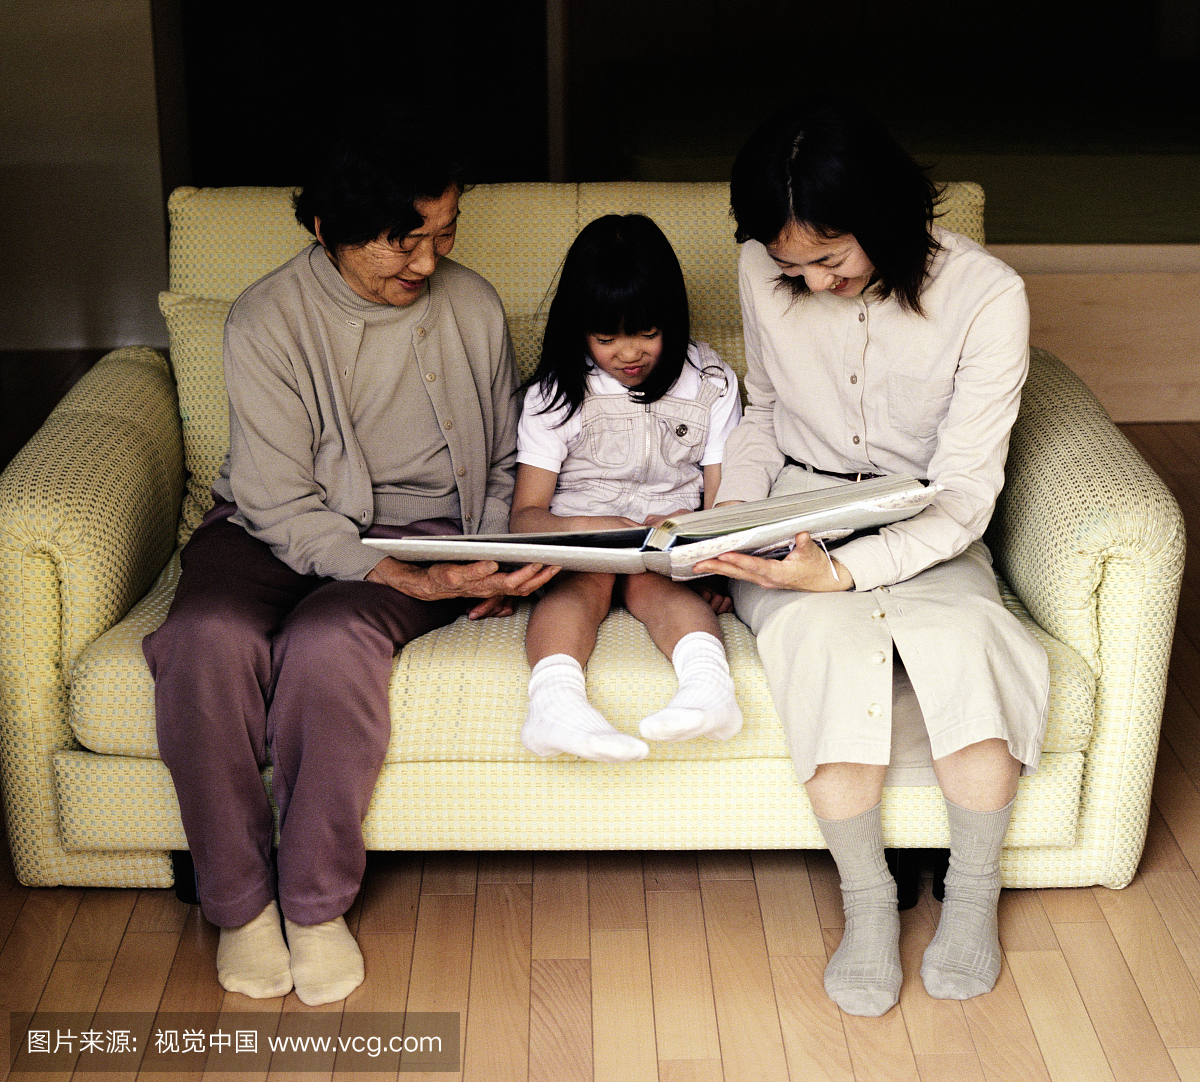 祖母,母亲和女儿(6-8)在沙发上看相册